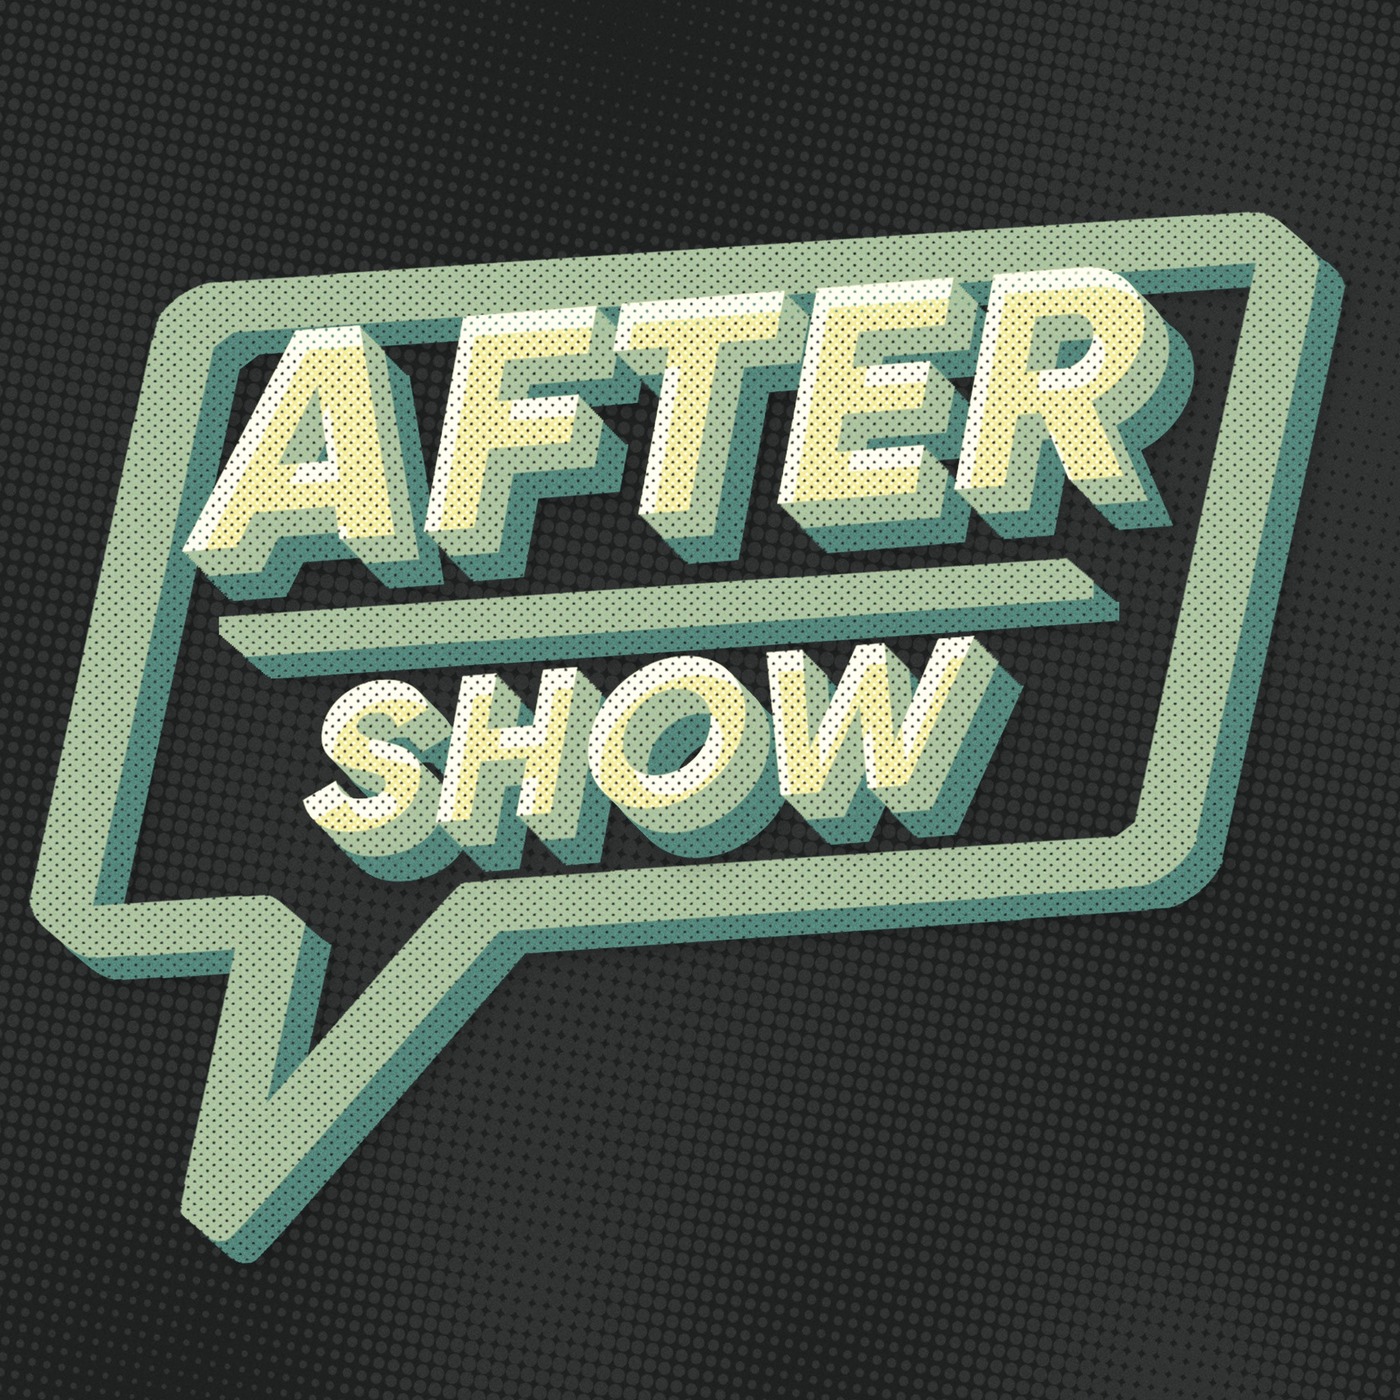 Andor Episode 9 Aftershow